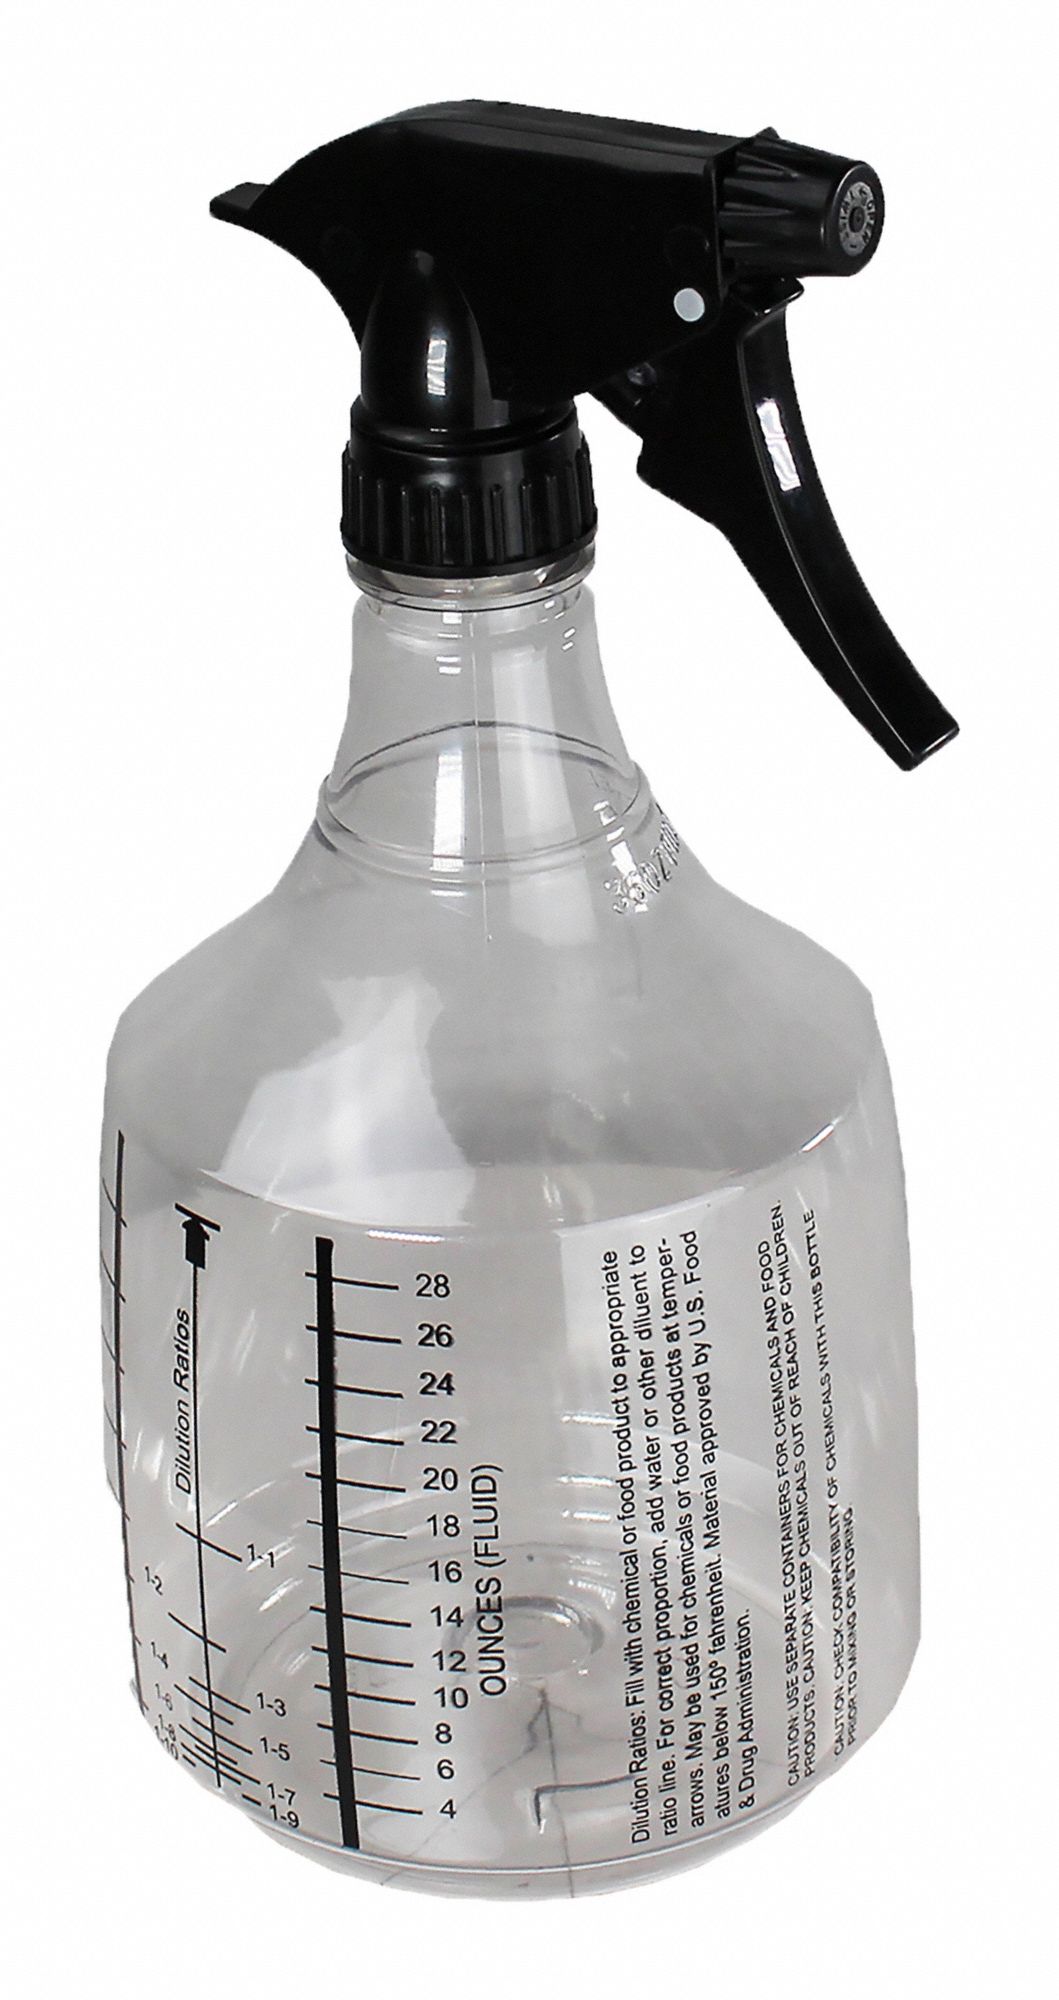 911375-8 Tough Guy Trigger Spray Bottle, 24 oz., White, Tough Guy 2ZWN8,  Mist, Stream Dispensing Type, PK 12